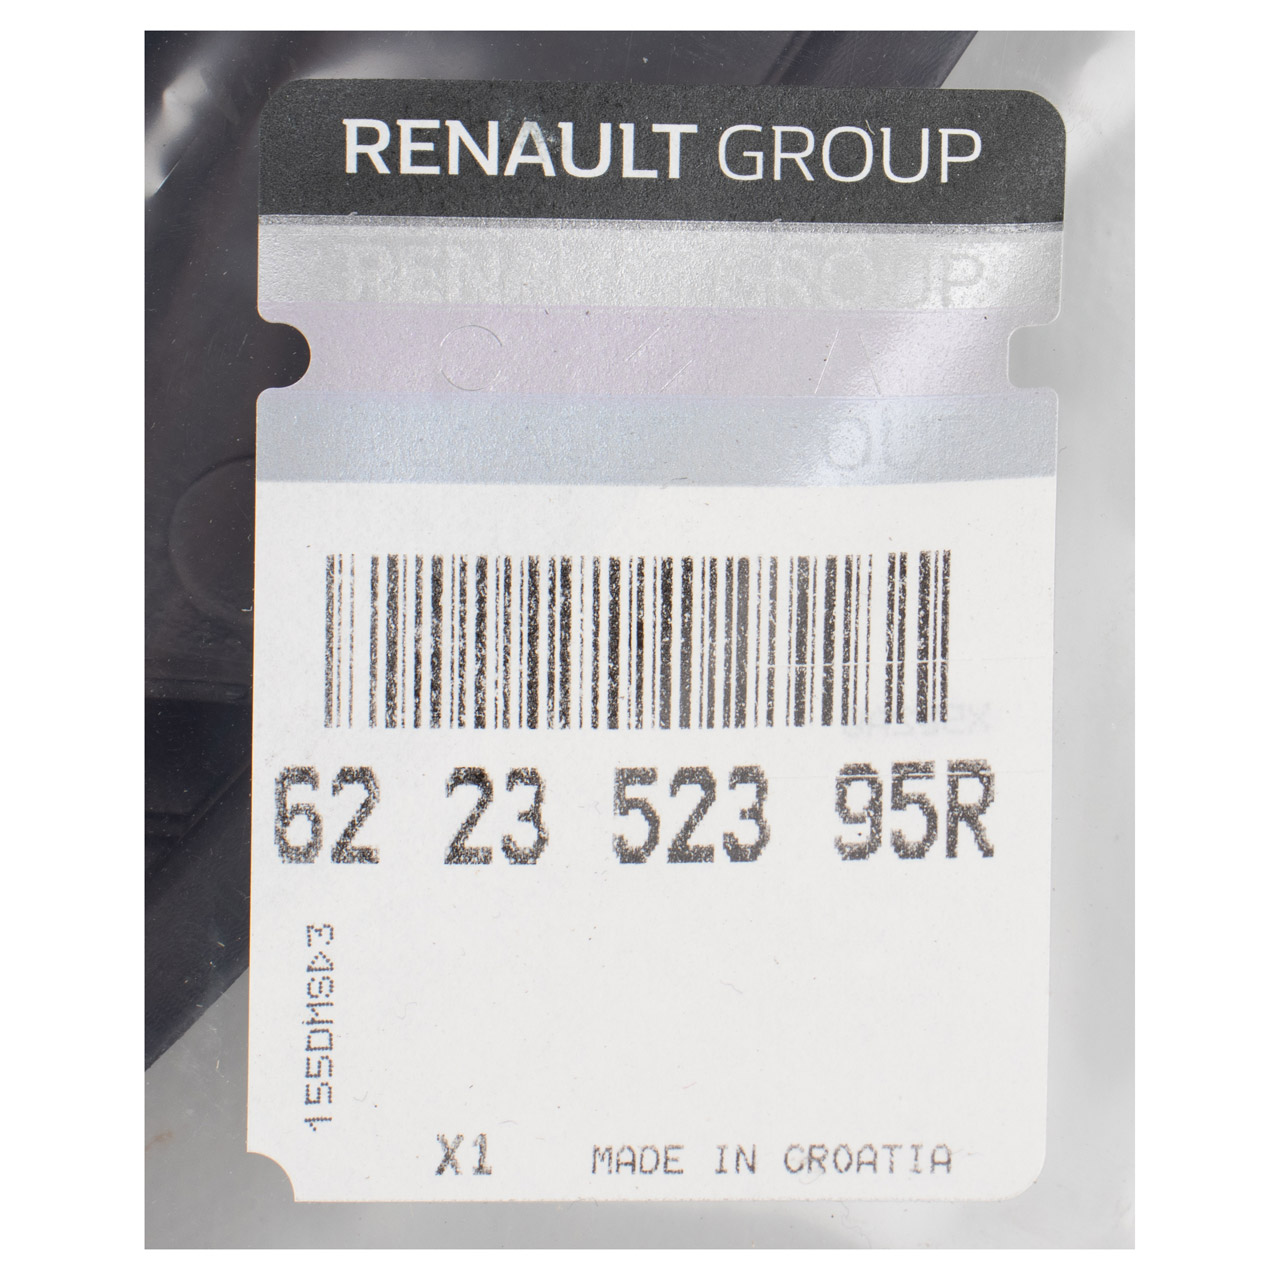 ORIGINAL Renault Abdeckung Stoßfänger Frontschürze Twingo 3 unten 622352395R